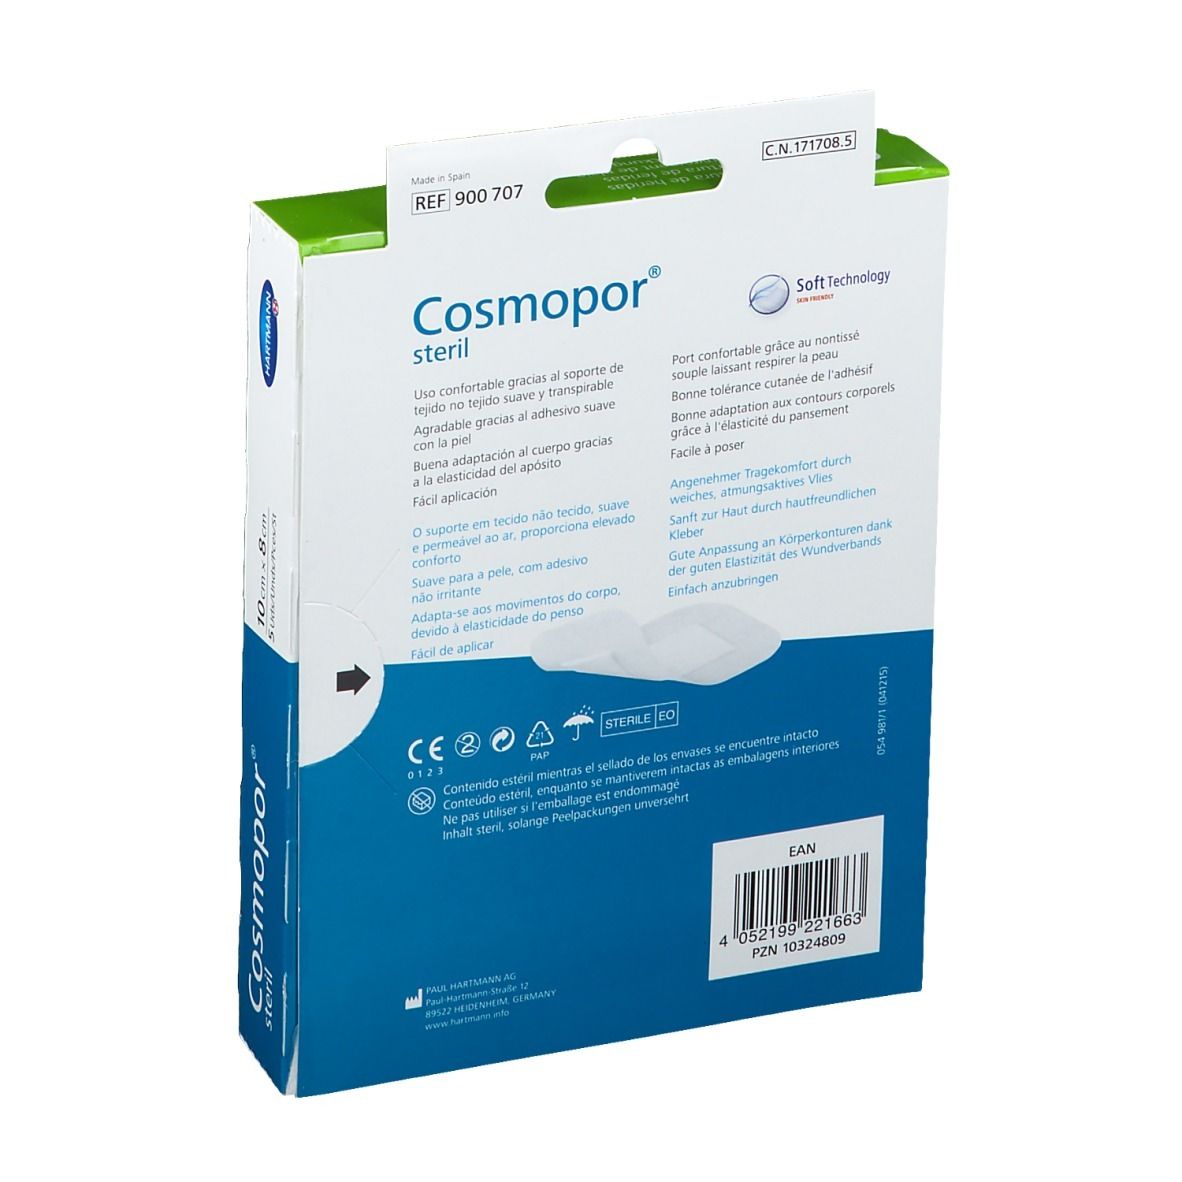 Cosmopor® steril 10 x 8 cm